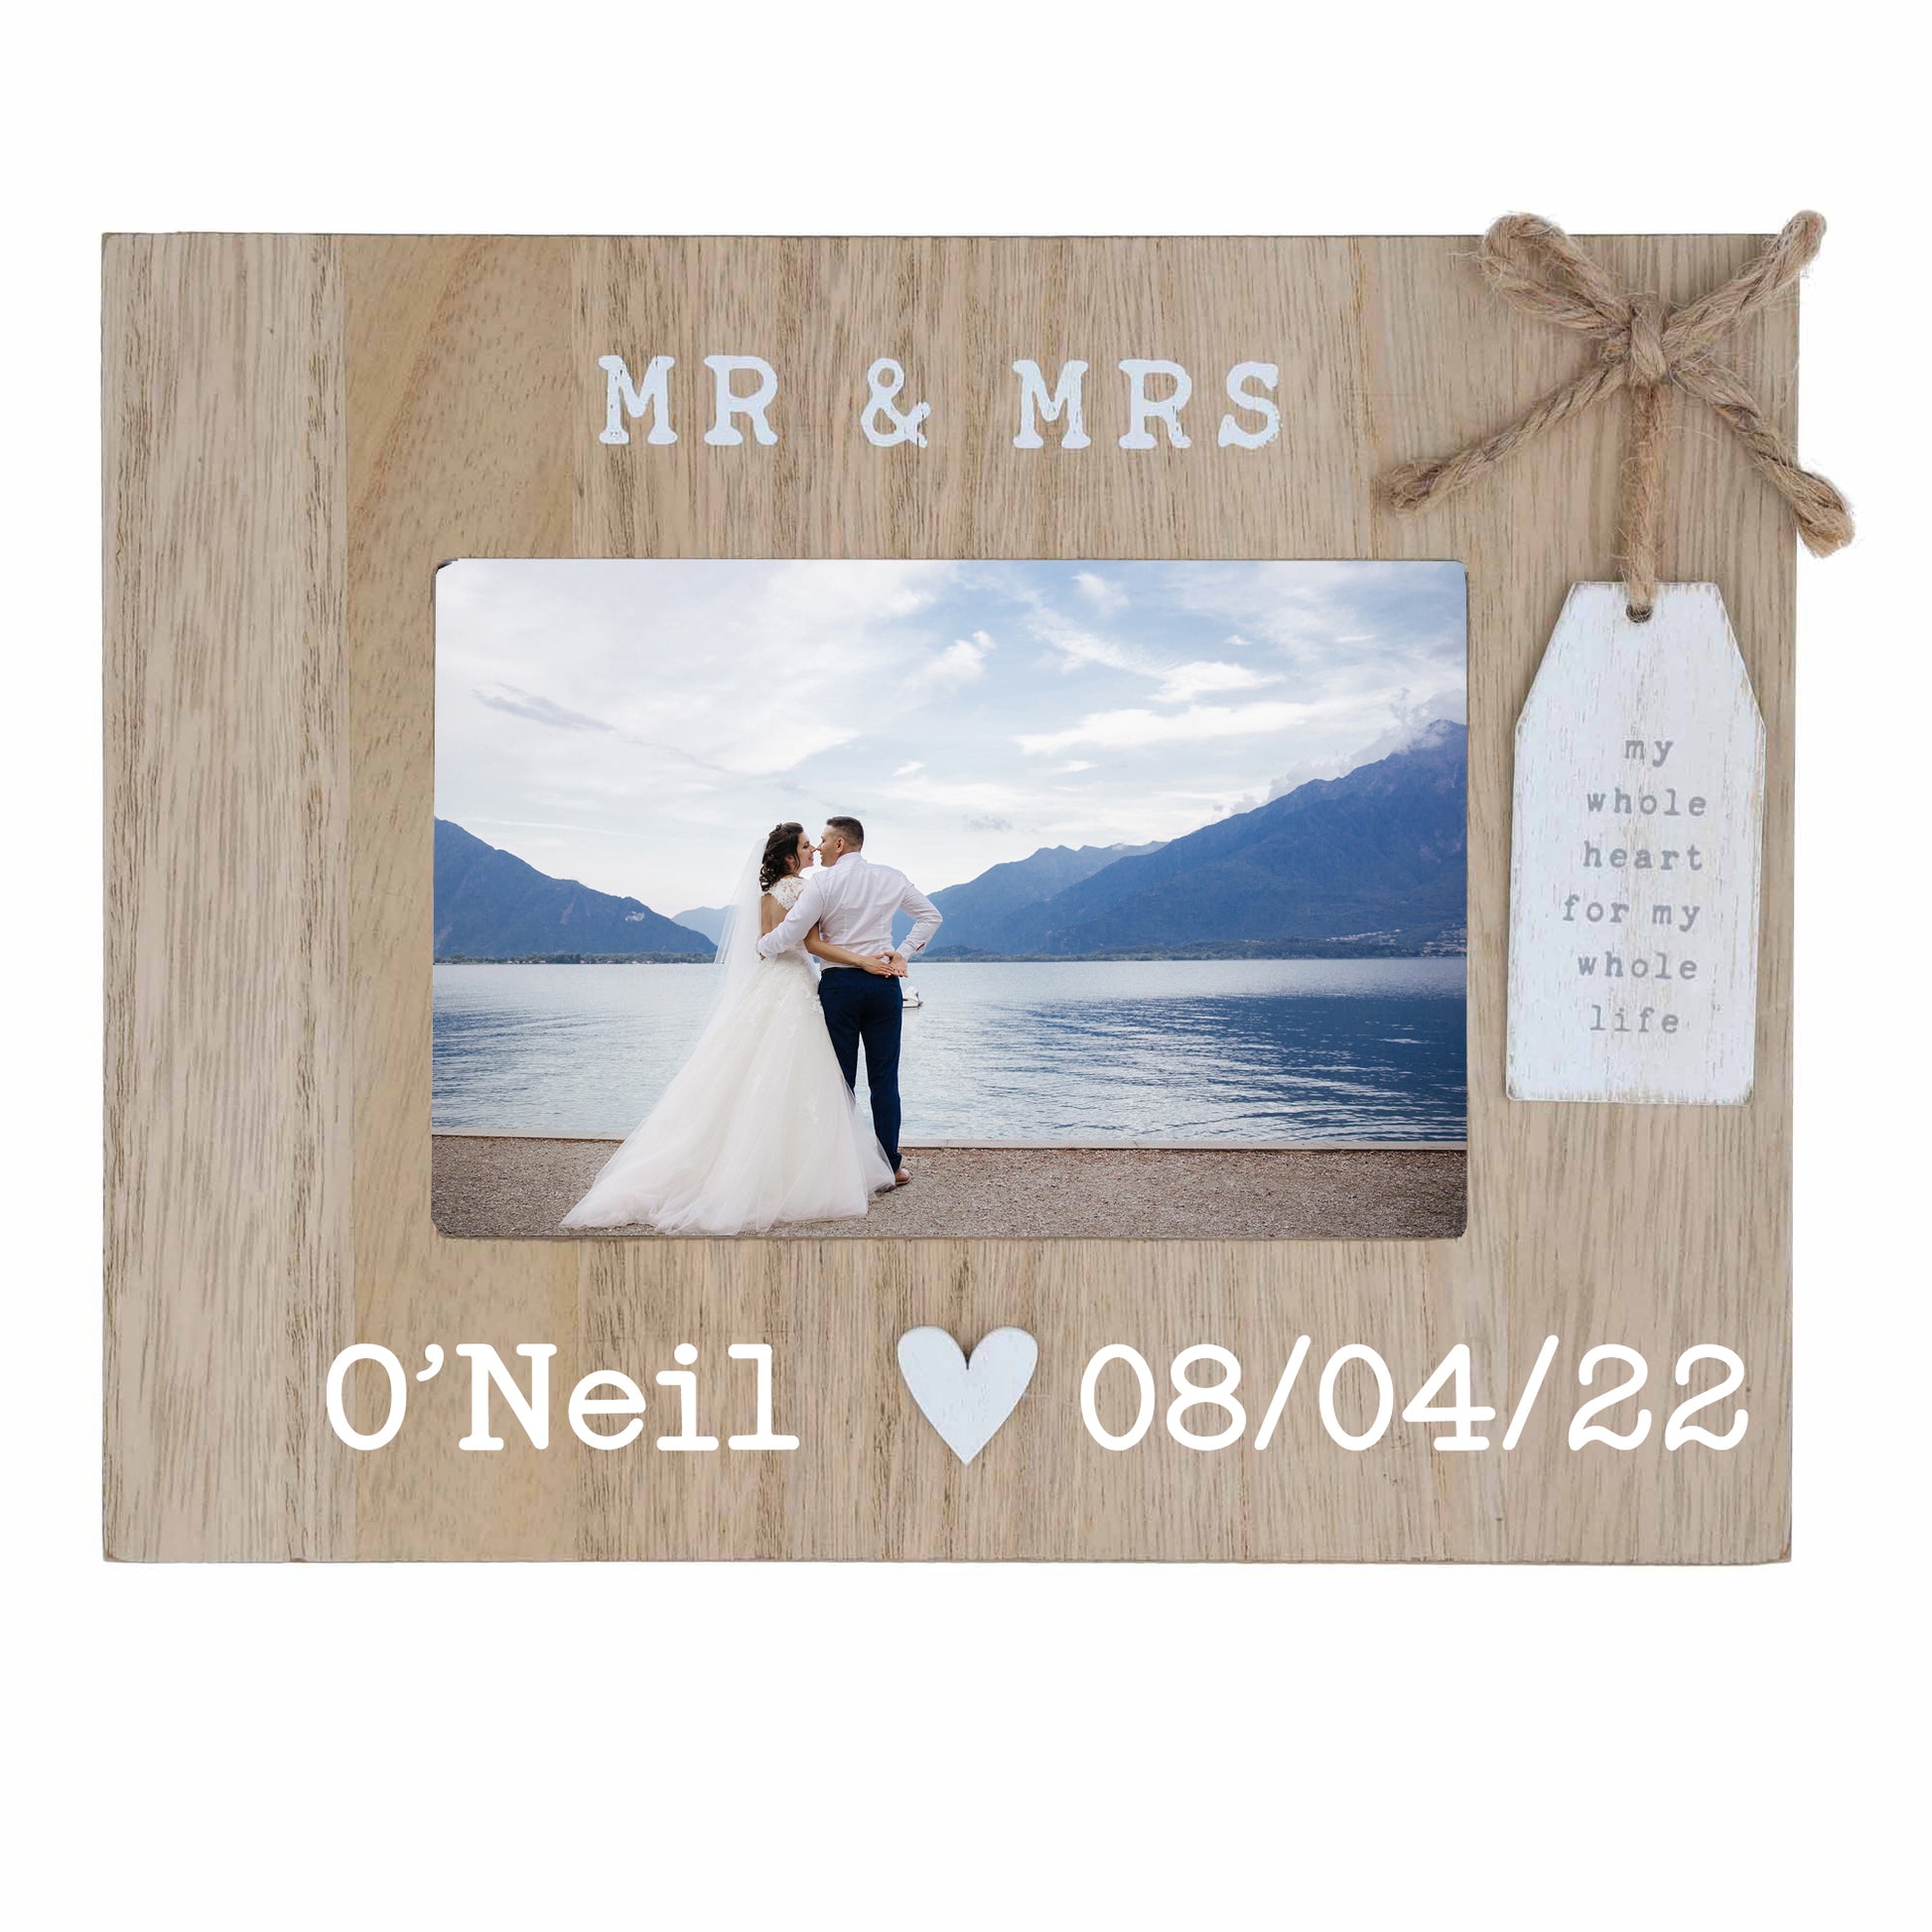 Personalised Mr & Mrs Wedding Photo Frame  - Always Looking Good -   